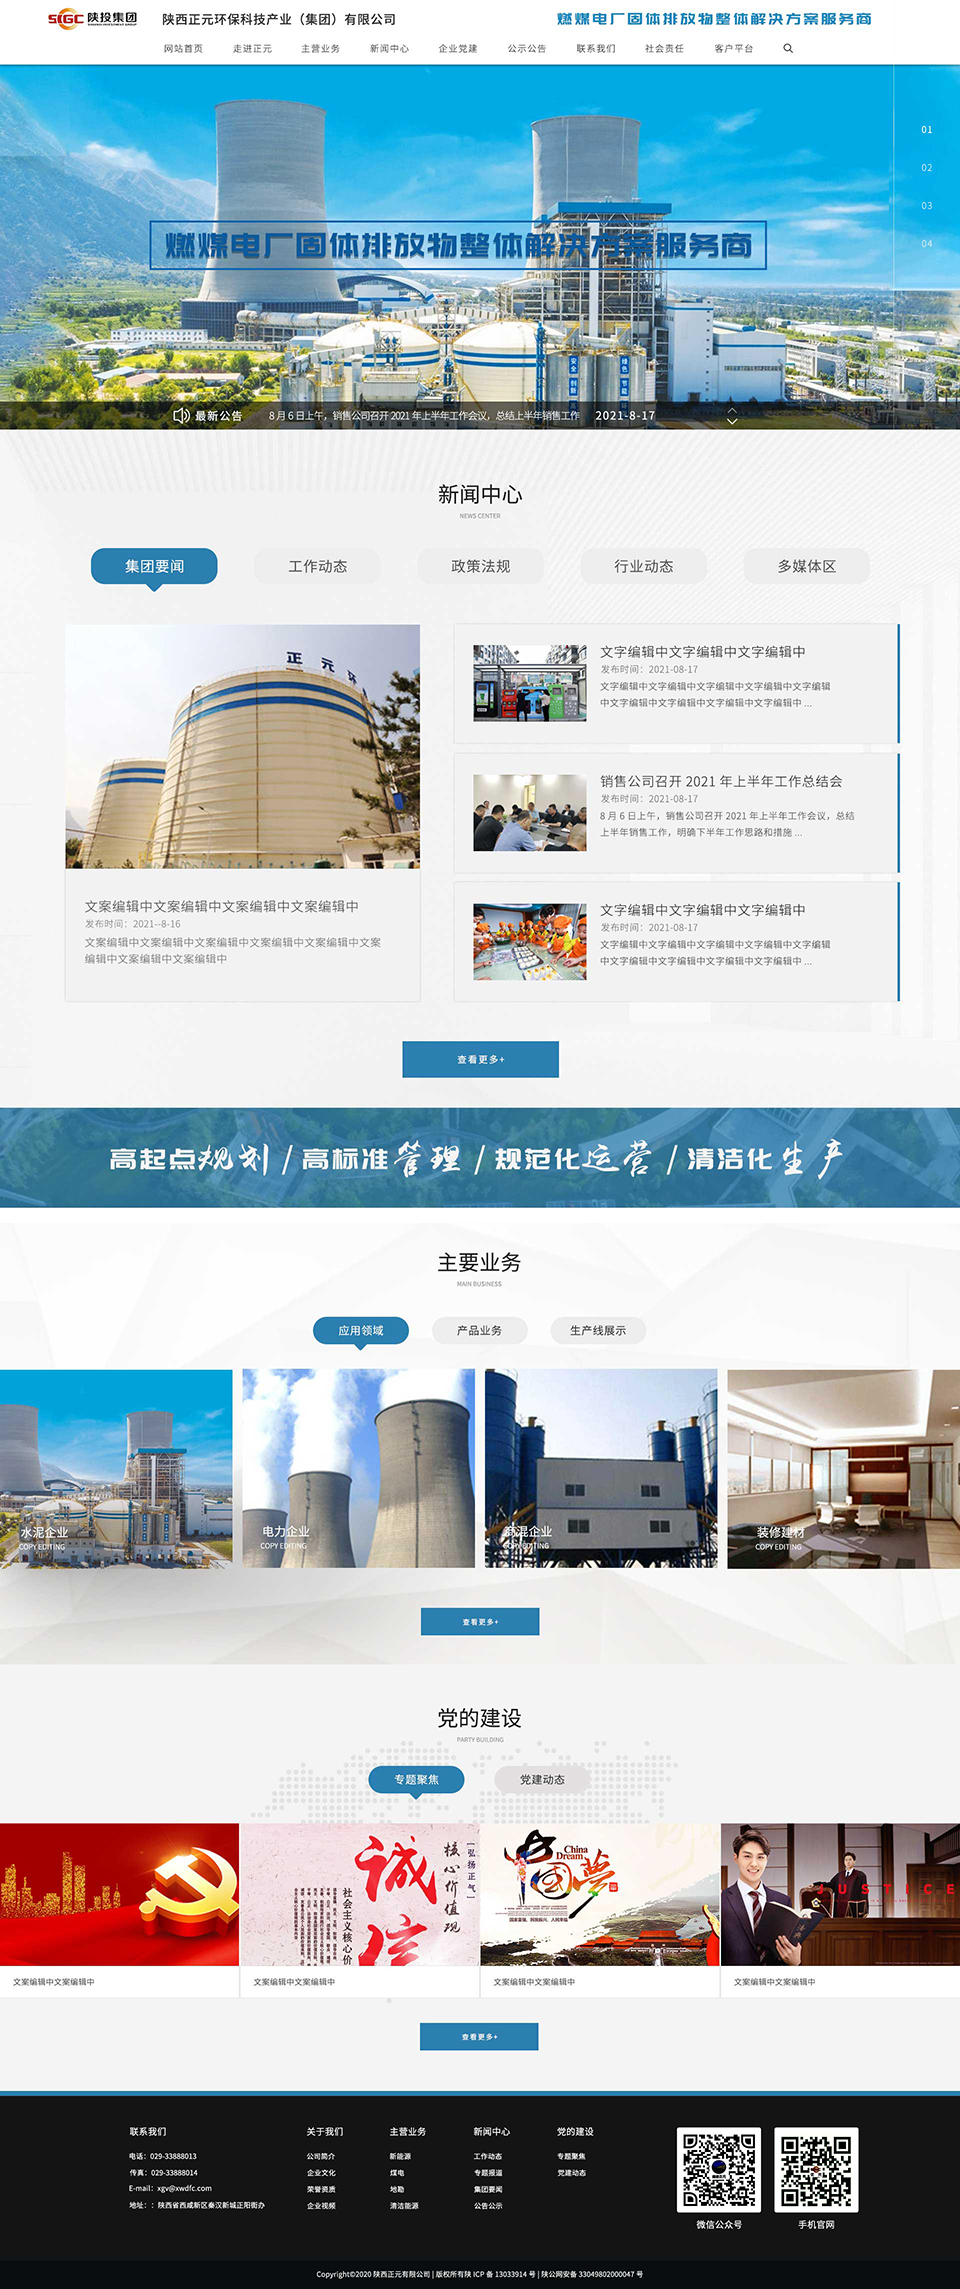 西安网站建设,西安网站优化,西安小程序开发